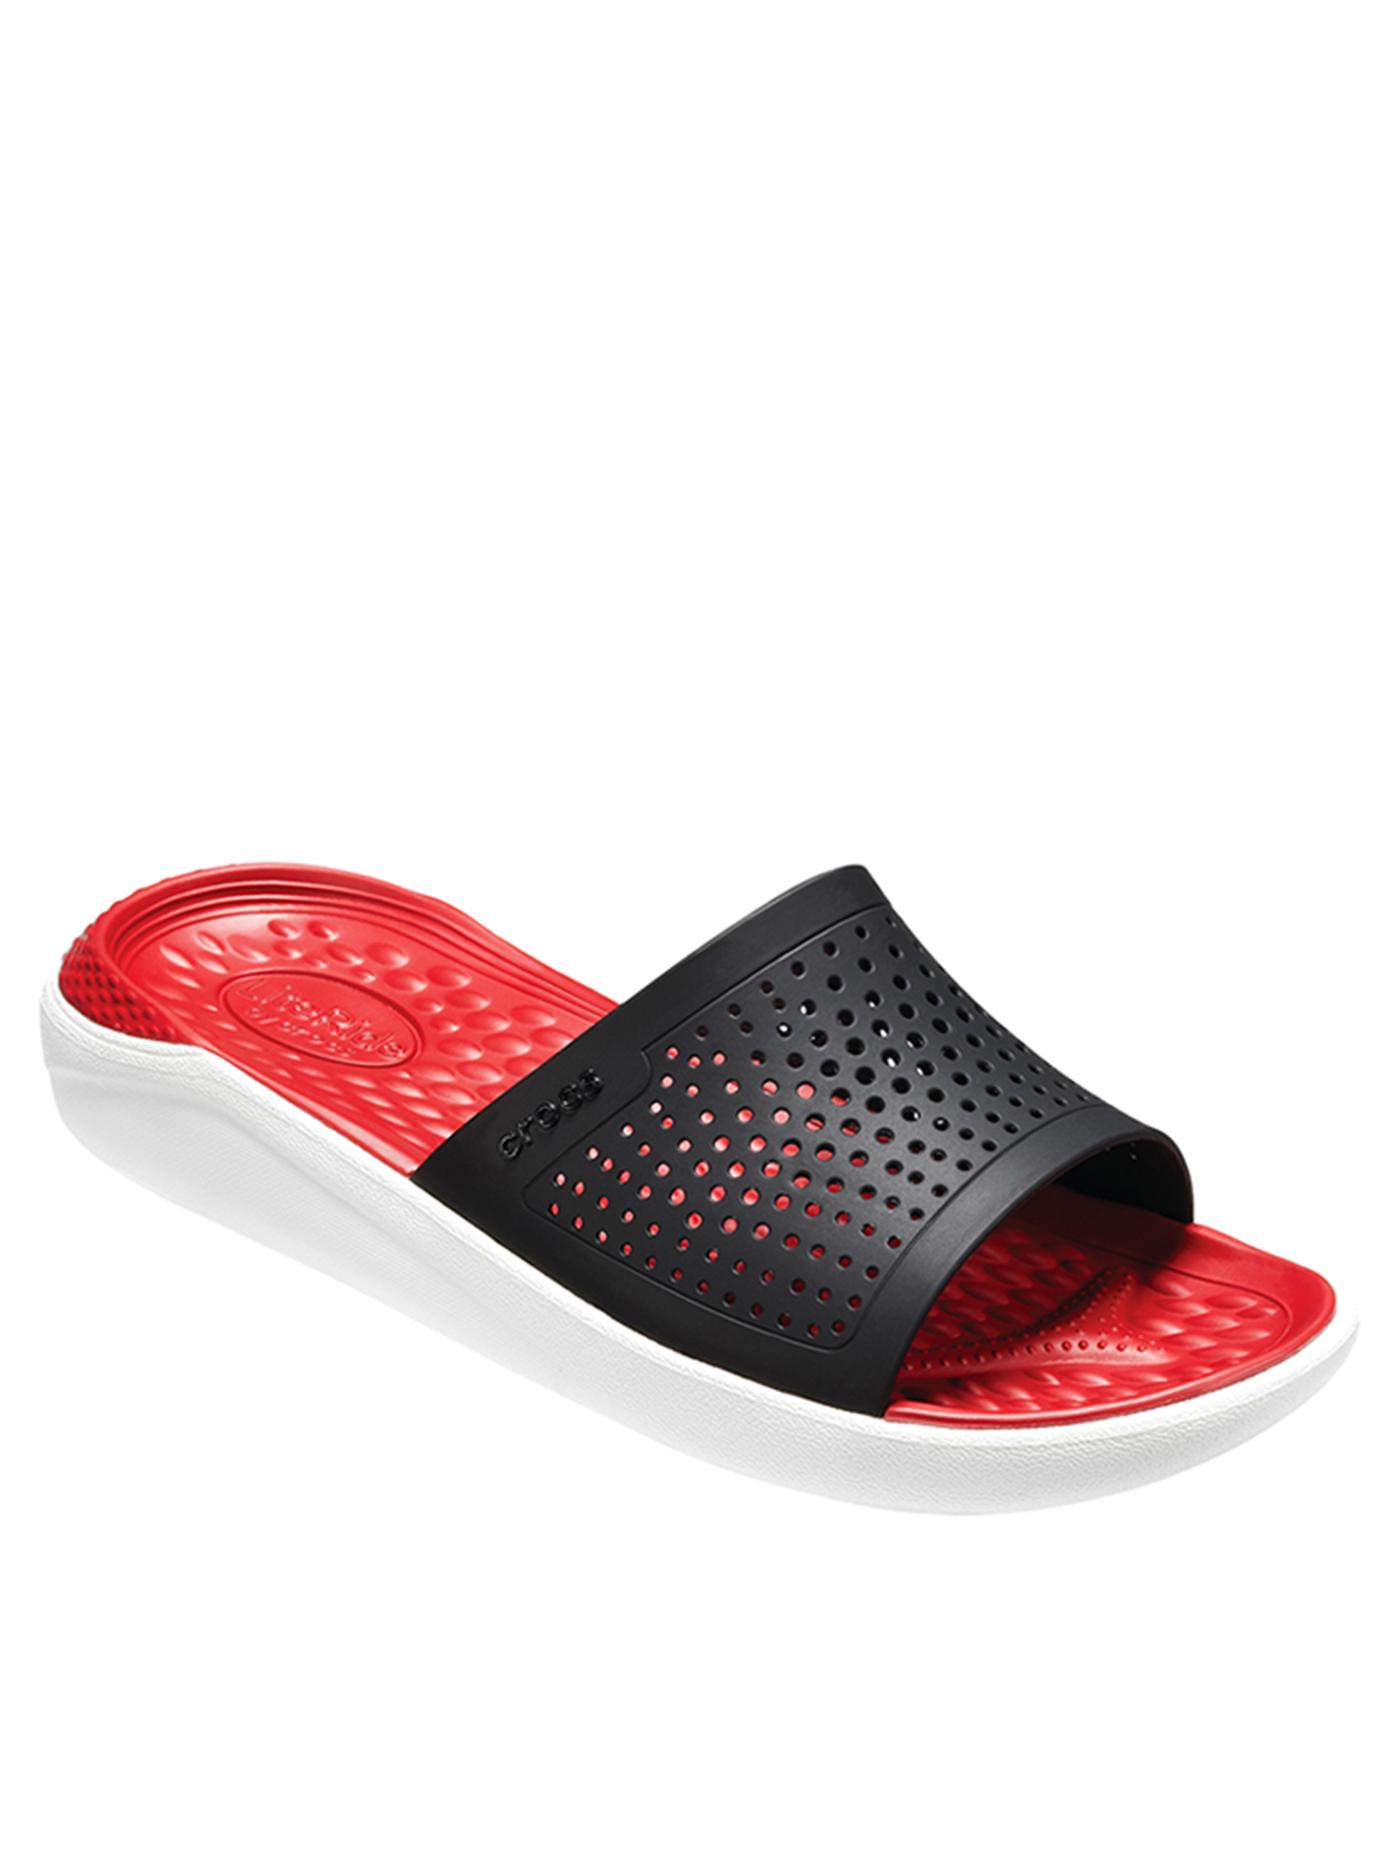 CROCS รองเท้าแตะแบบสวมสำหรับผู้ใหญ่ รุ่น Literide Slide ไซส์ M5/W7 สีแดง-ขาว